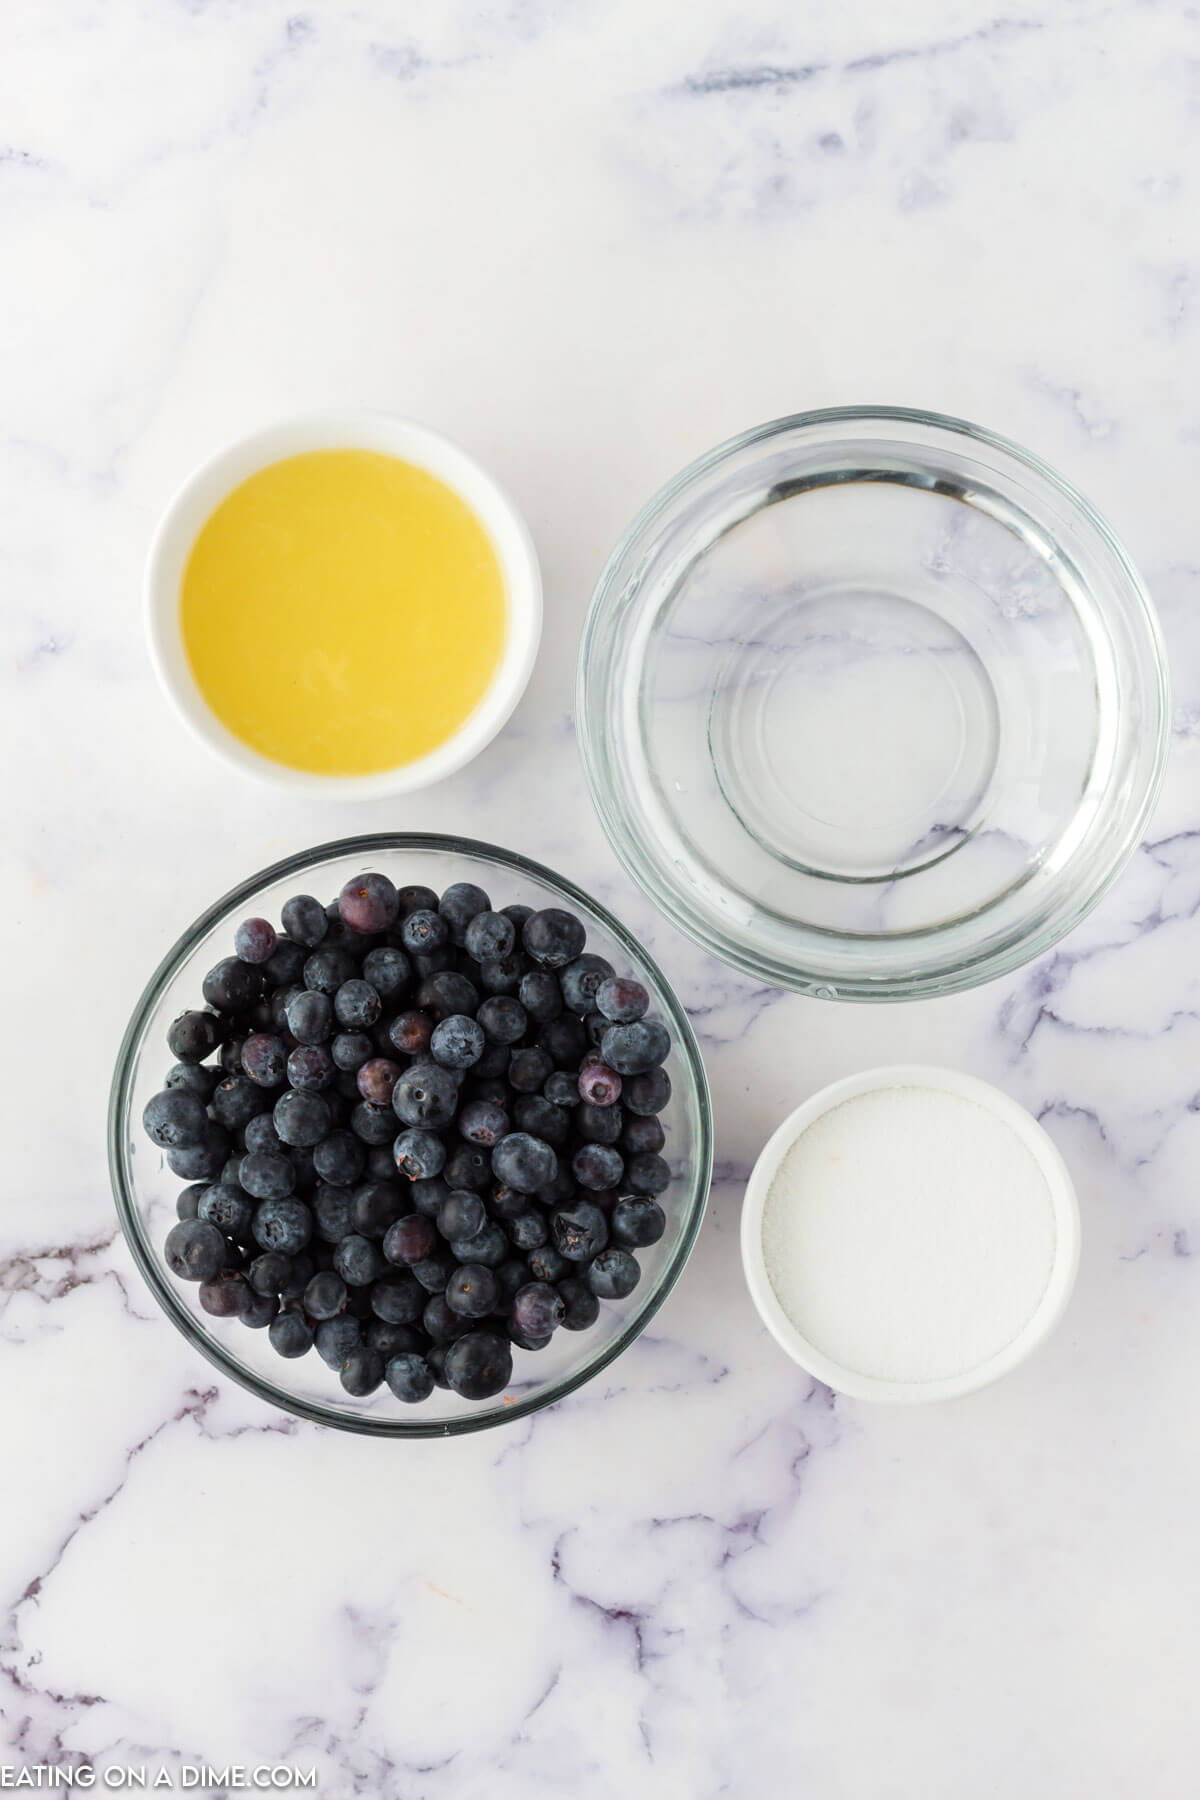 Ingredients needed - water, blueberries, lemon juice, sugar